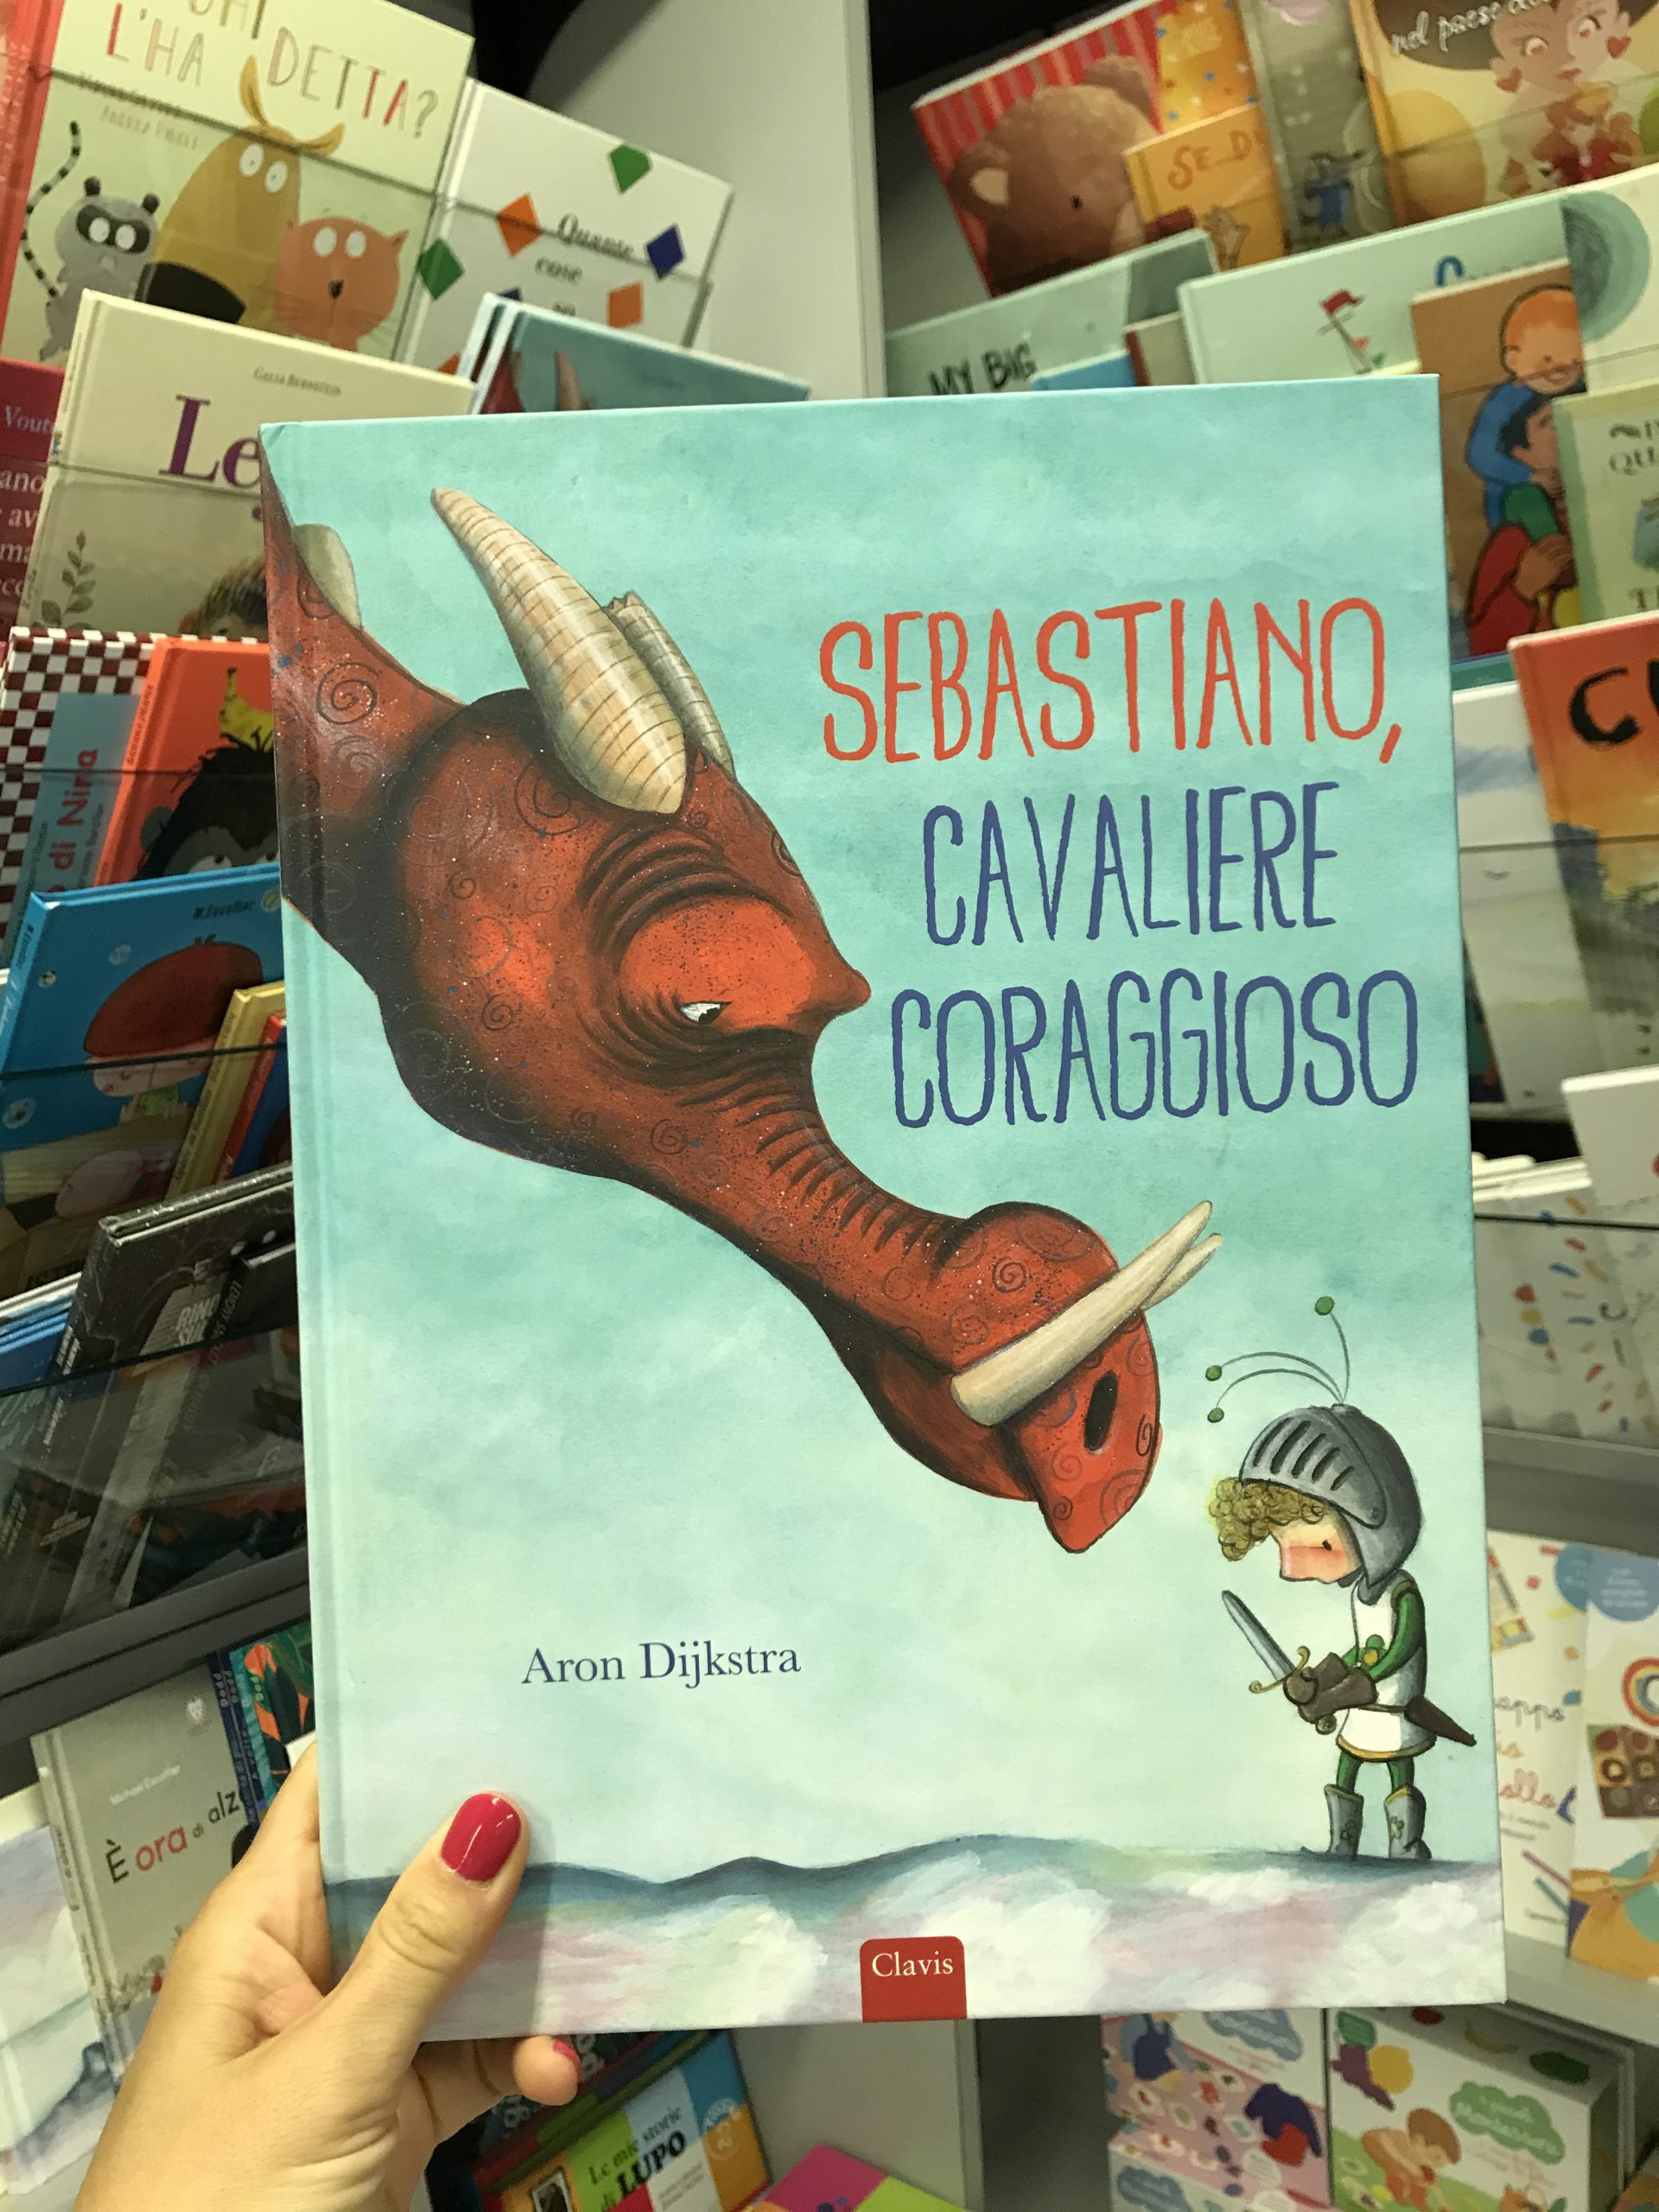 SEBASTIANO CAVALIERE CORAGGIOSO - Libreria Altern@tiva Trento